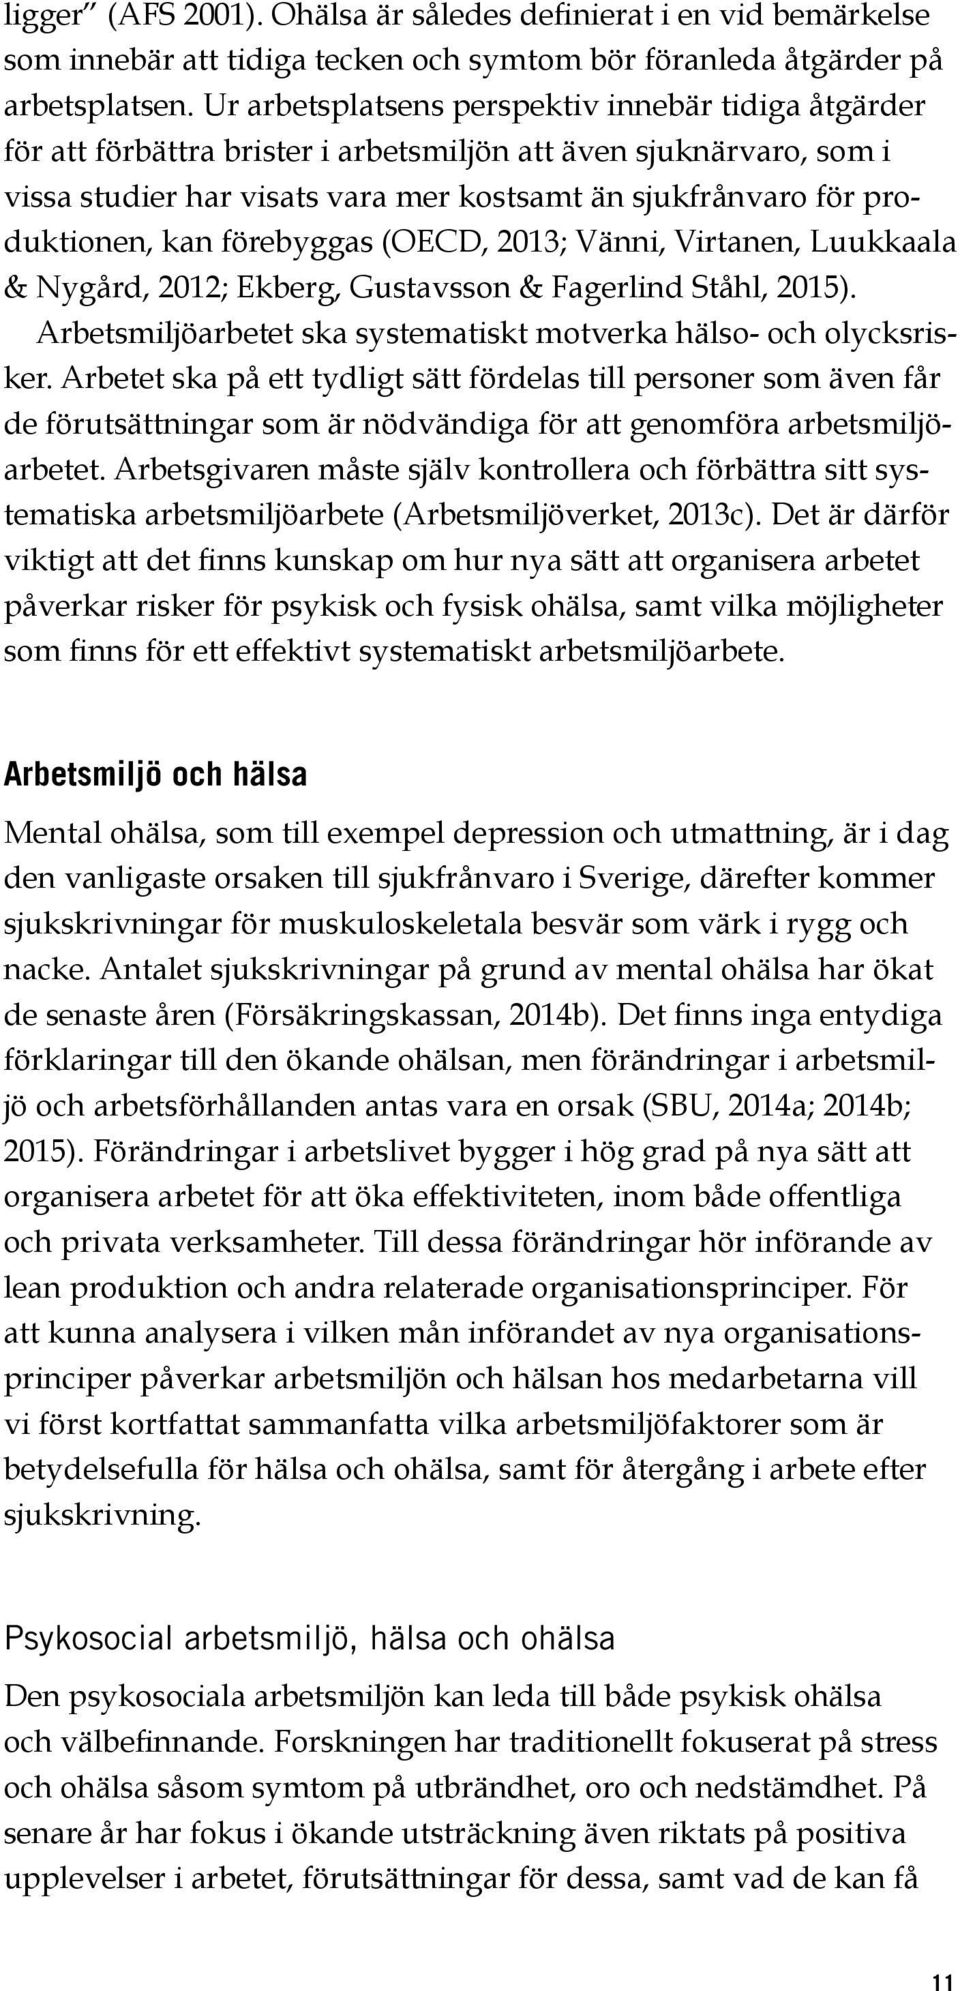 kan förebyggas (OECD, 2013; Vänni, Virtanen, Luukkaala & Nygård, 2012; Ekberg, Gustavsson & Fagerlind Ståhl, 2015). Arbetsmiljöarbetet ska systematiskt motverka hälso och olycksrisker.